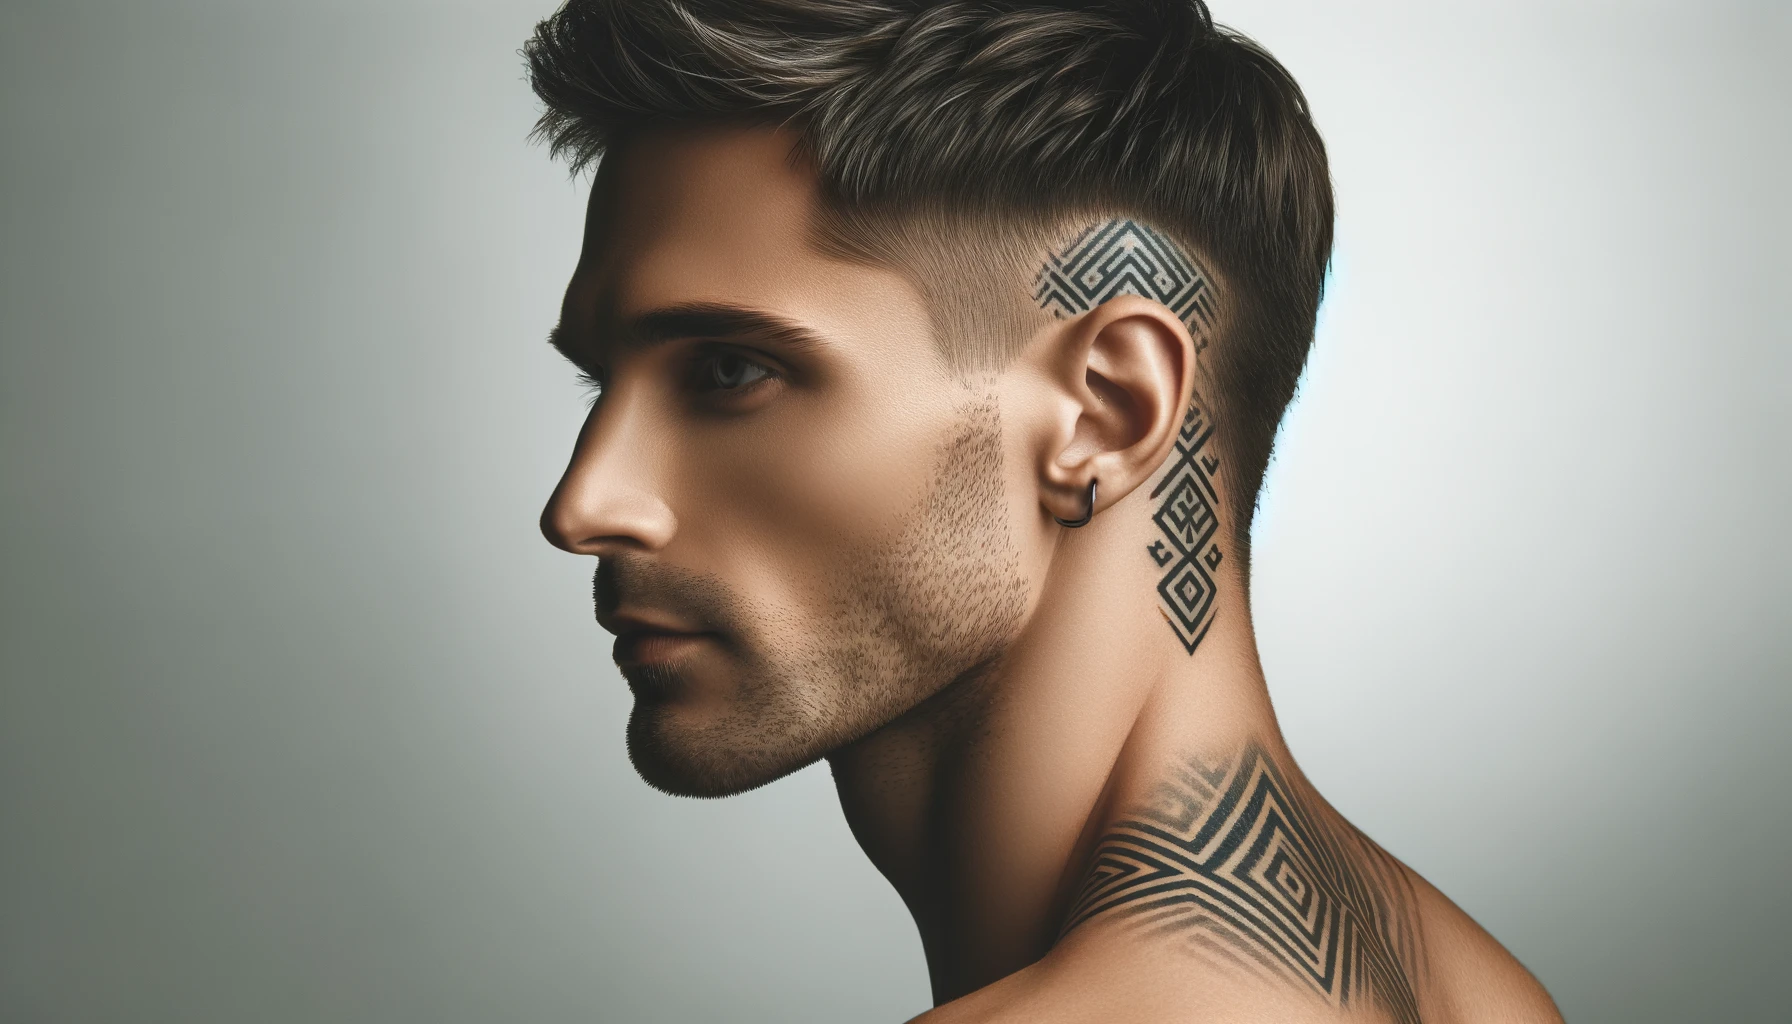 Mężczyzna o ostrym profilu i wyraźnych rysach twarzy ma na uchu oraz na szyi tatuaże o geometrycznych wzorach. Tatuaż na szyi ciągnie się od ucha aż do linii barku